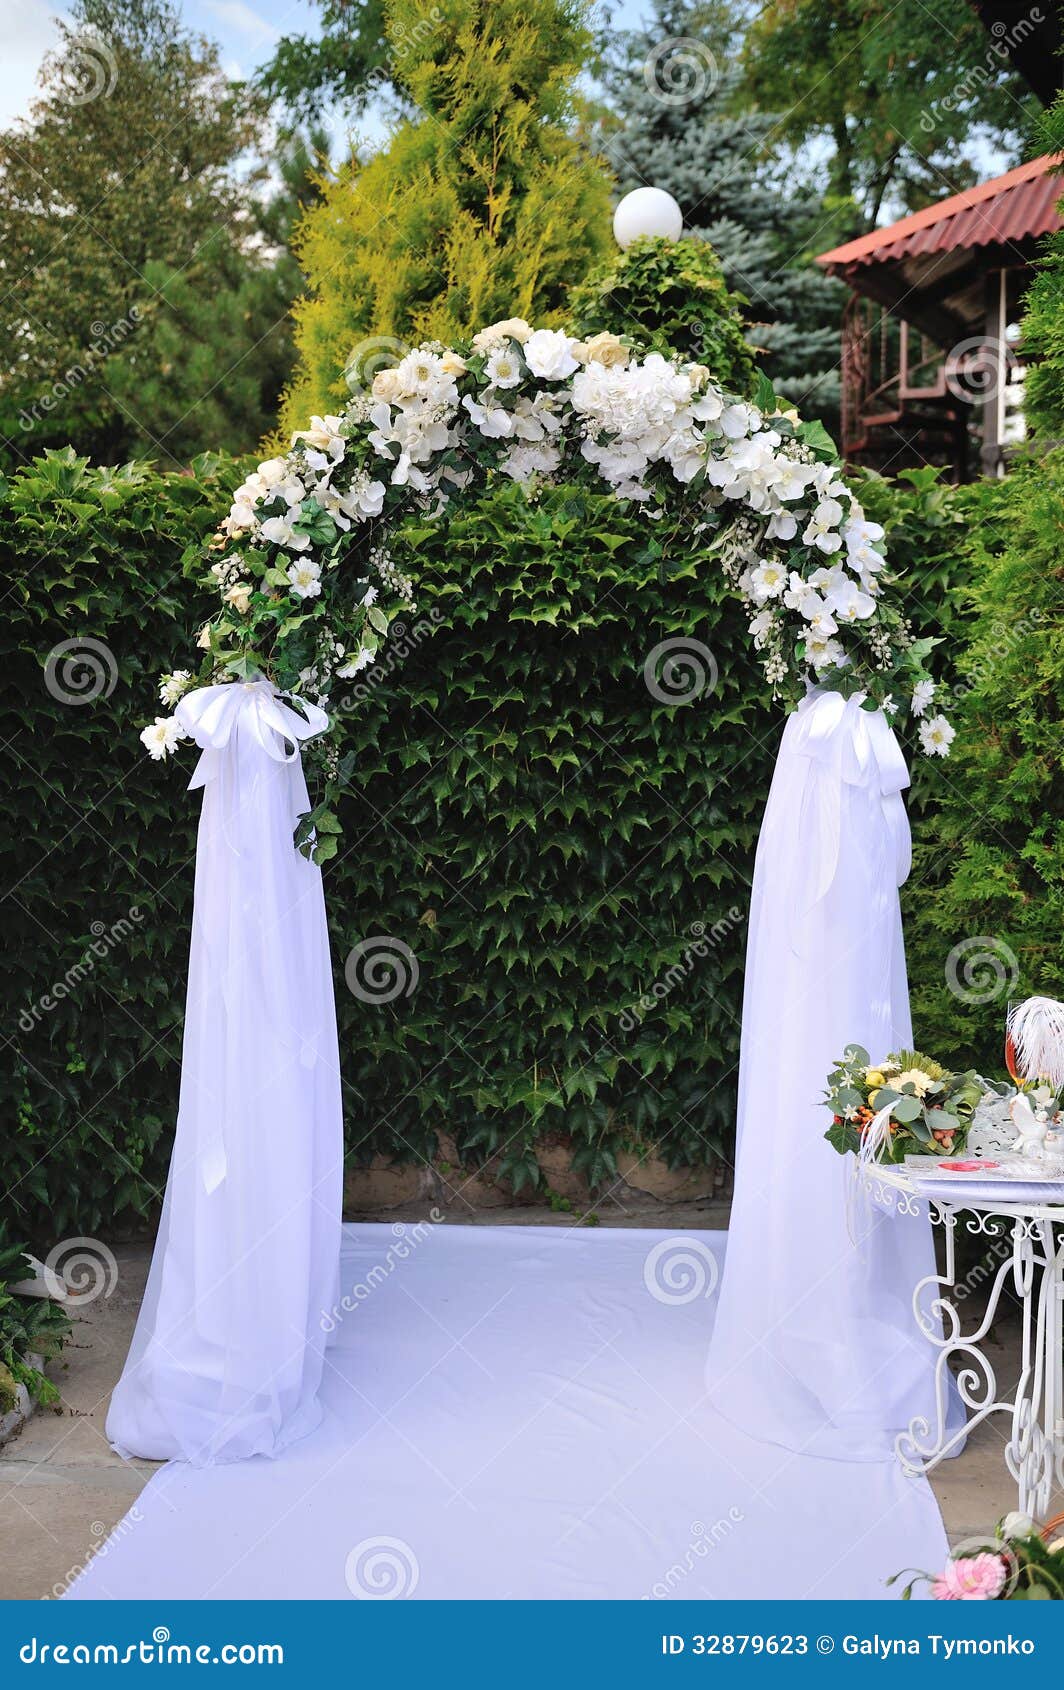 Wedding Arch Stock Photos - Image: 32879623